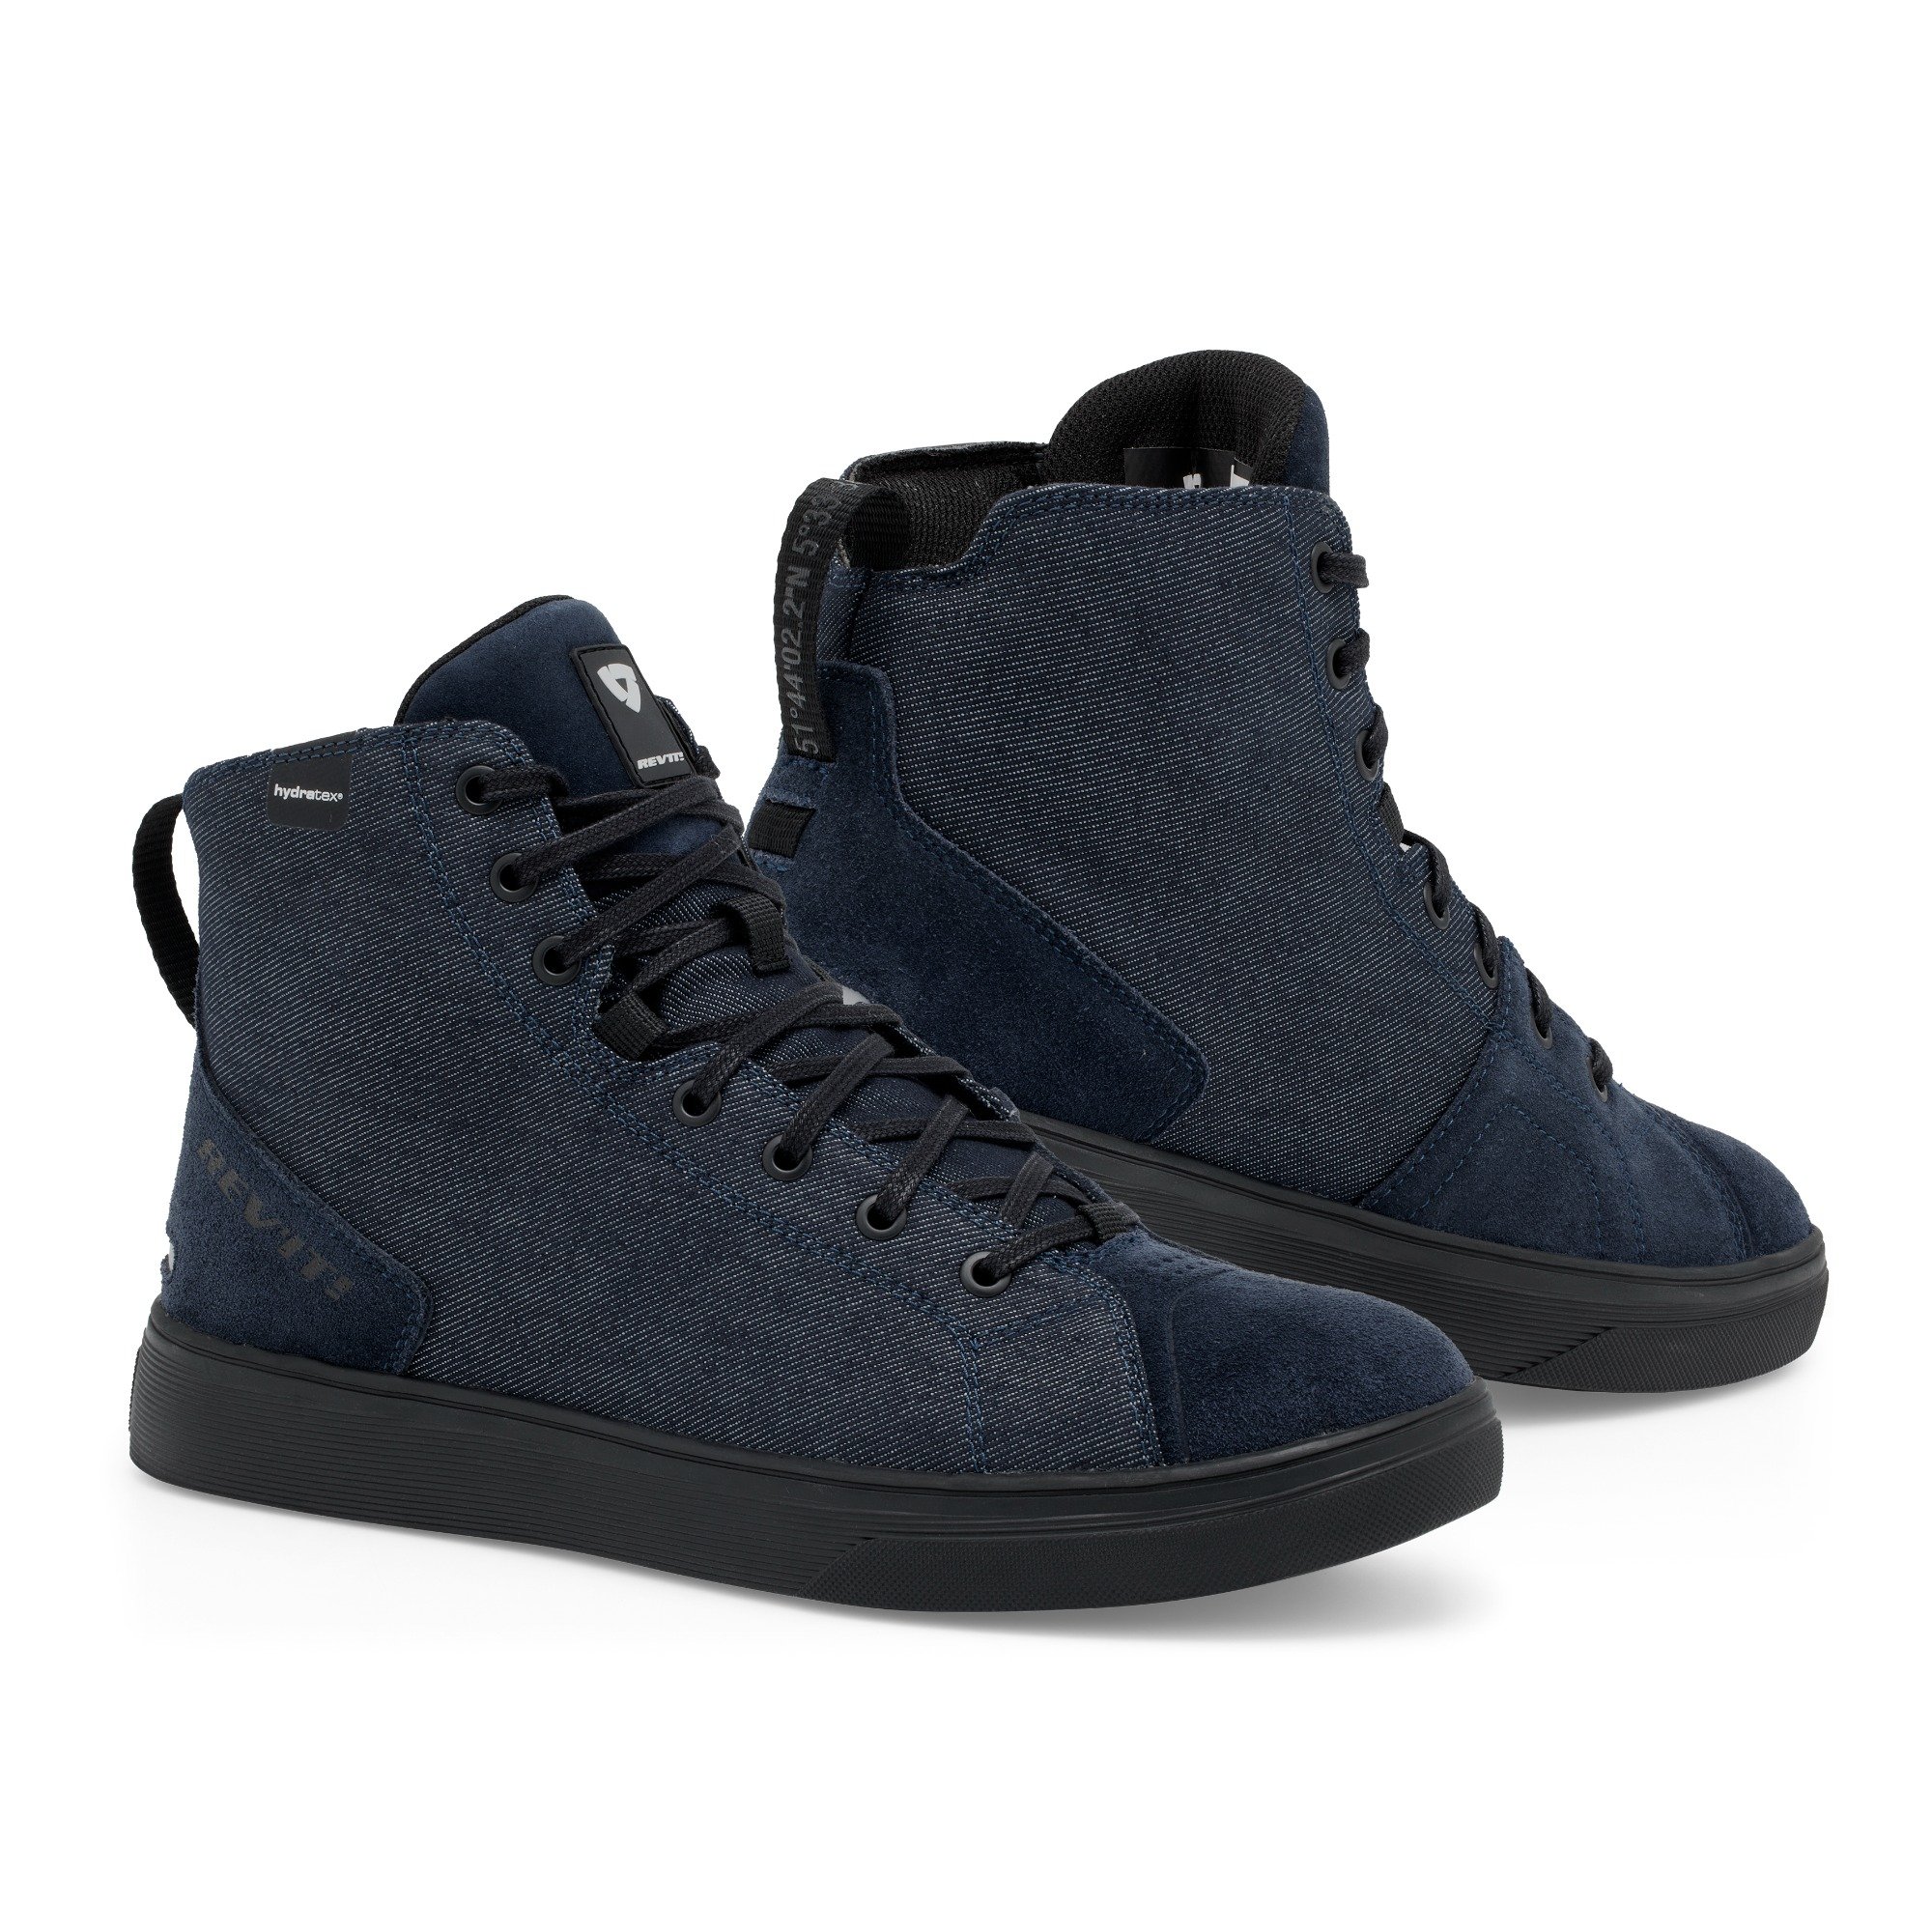 Image of REV'IT! Delta H2O Chaussures Foncé Bleu Noir Taille 45